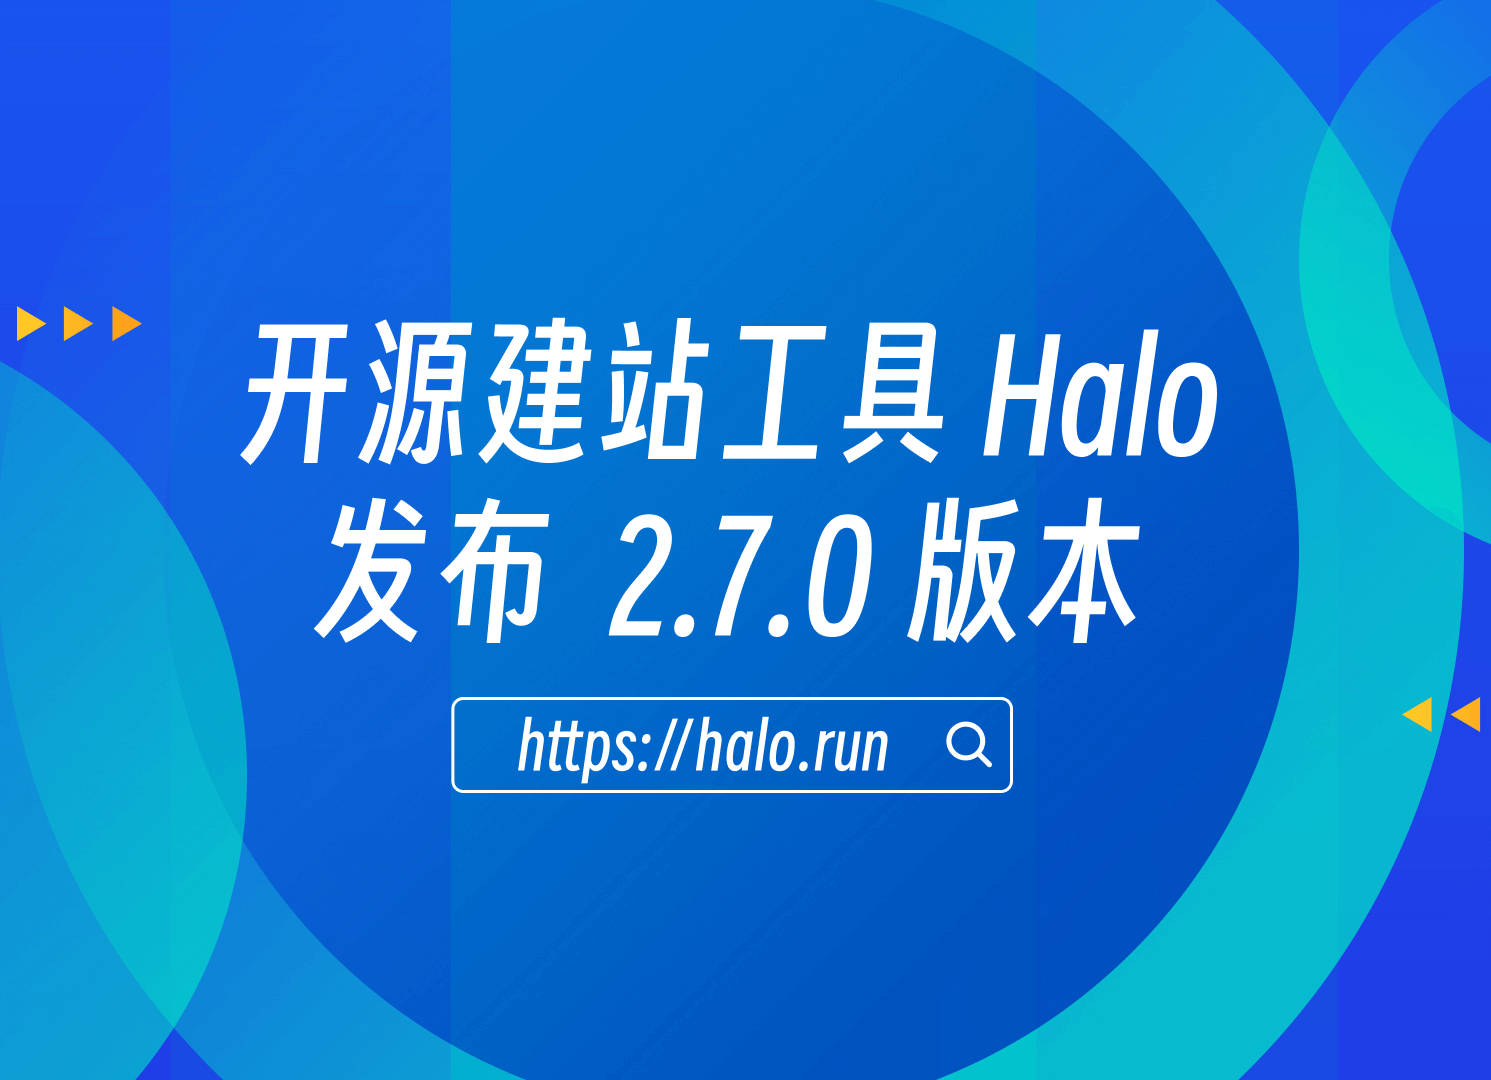 支持页面静态缓存，Halo 2.7.0 发布